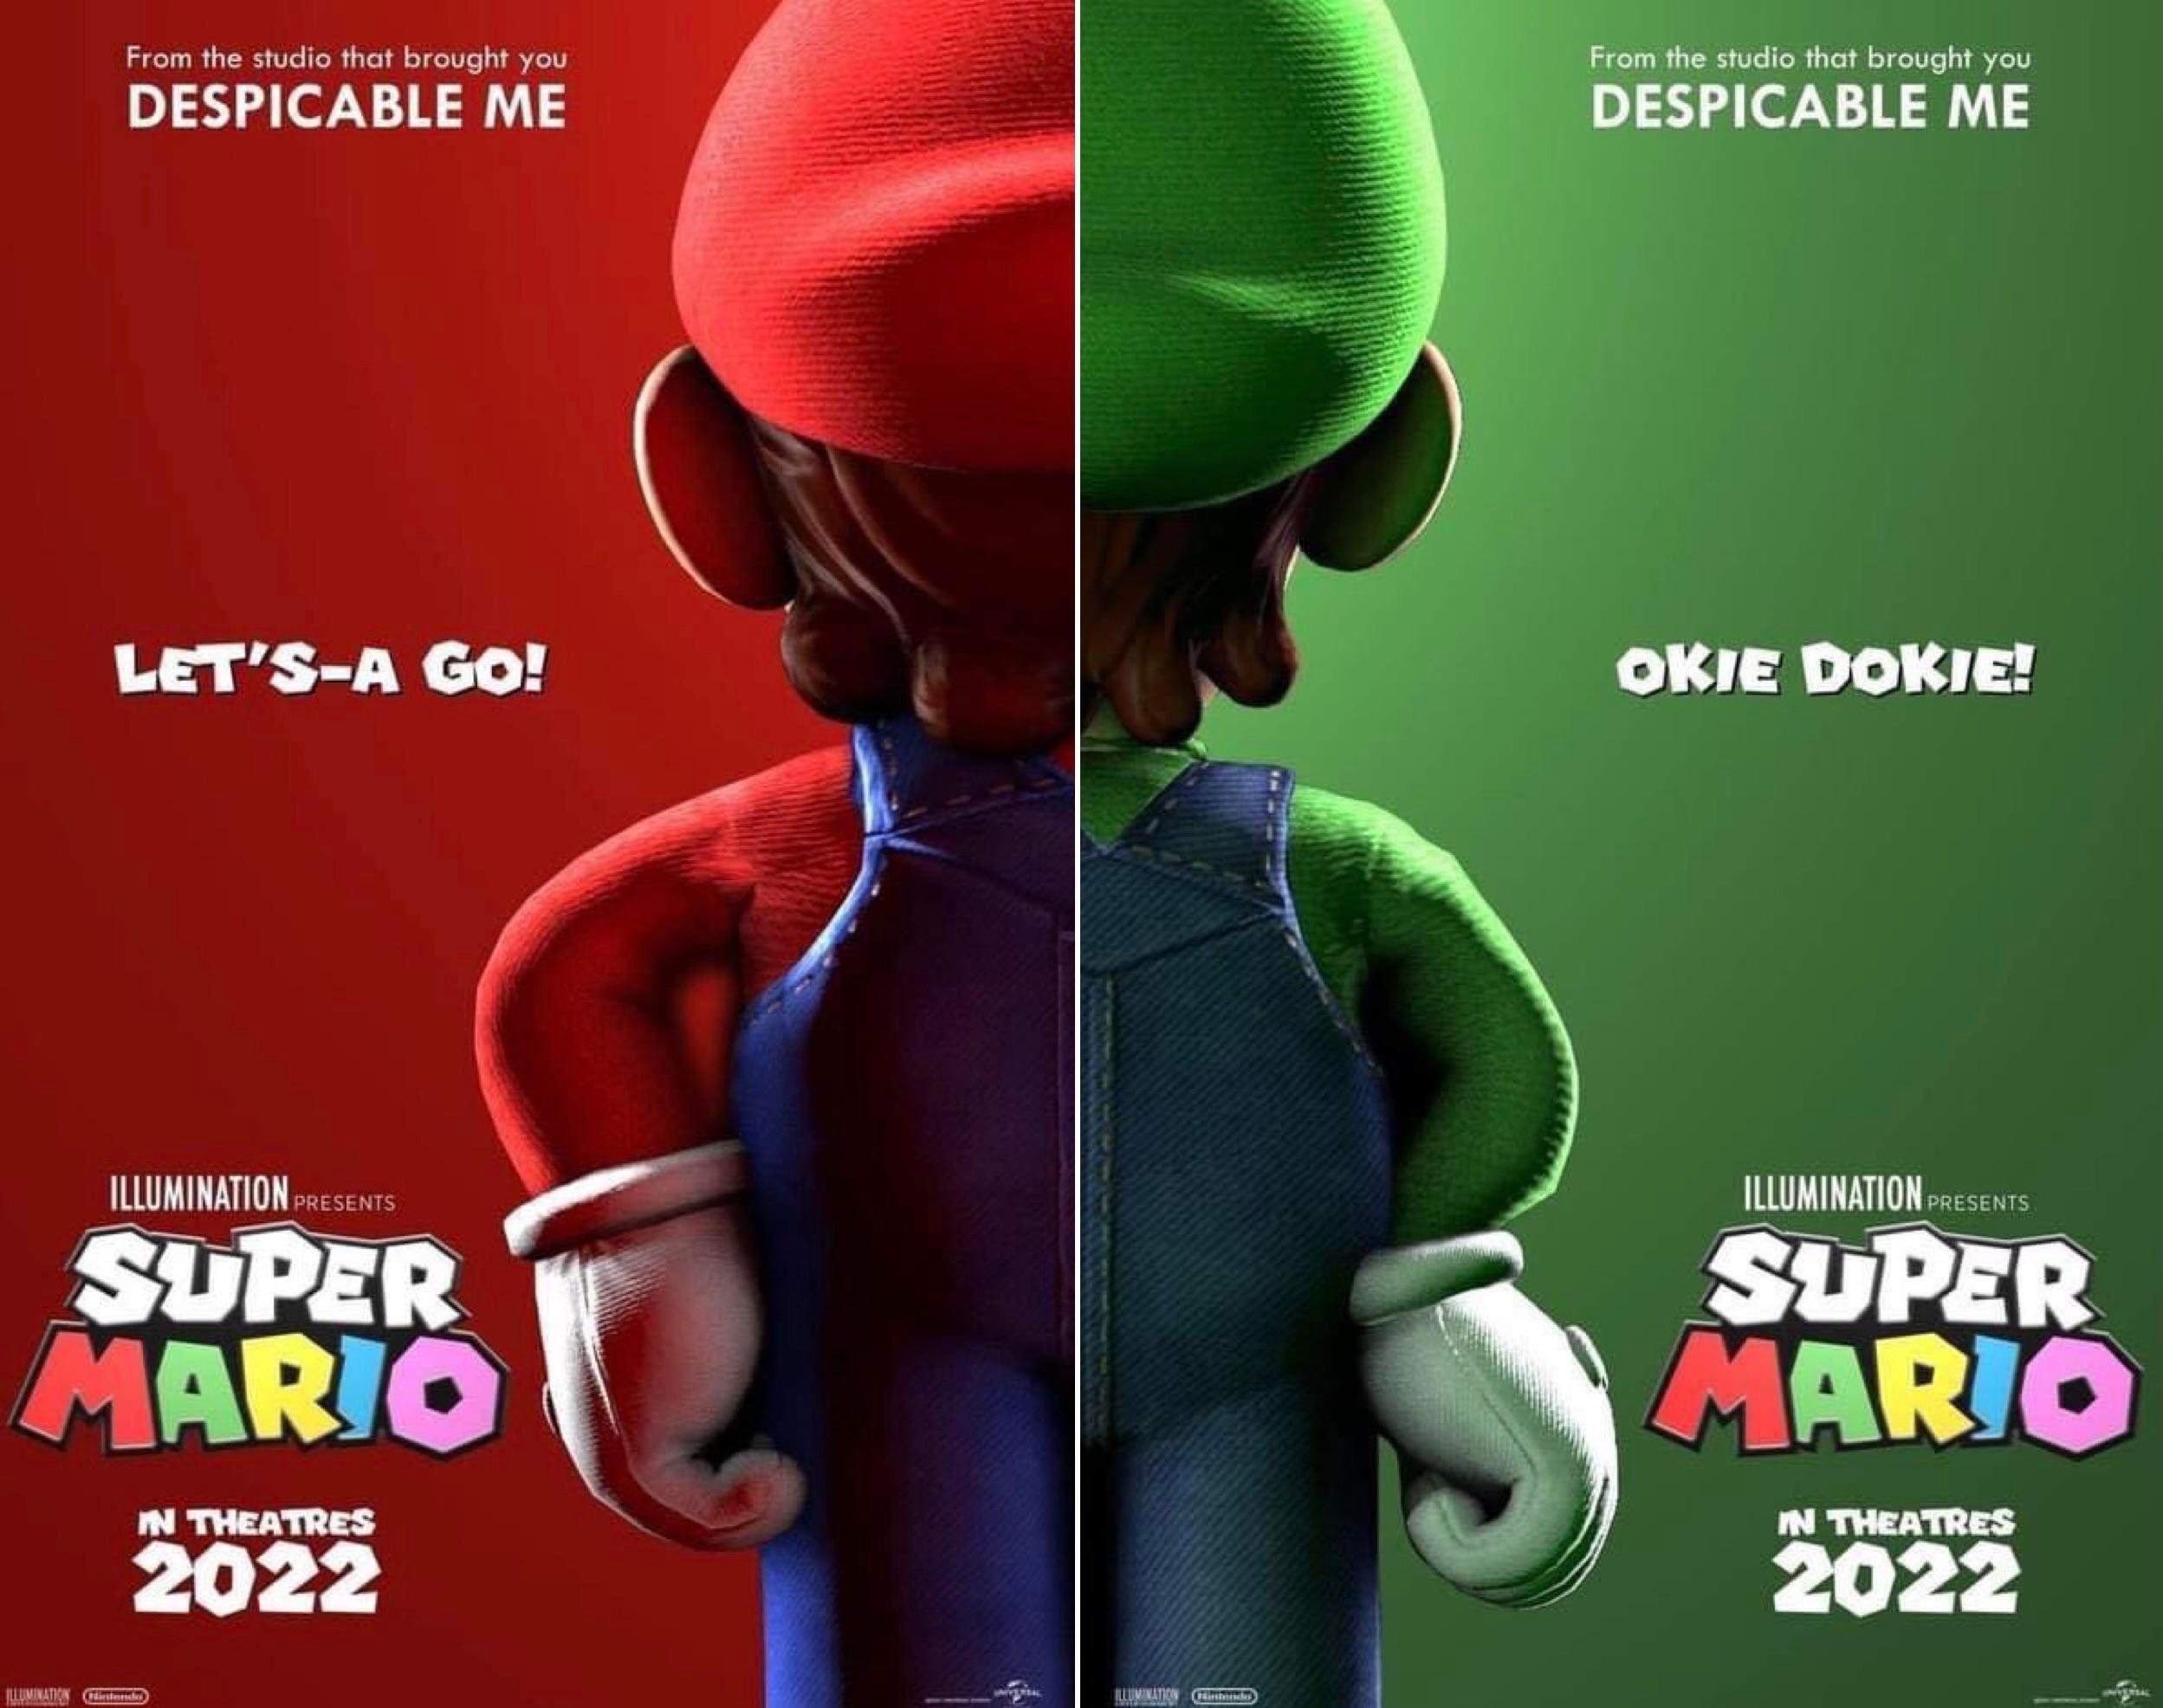 Super Mario movie poster